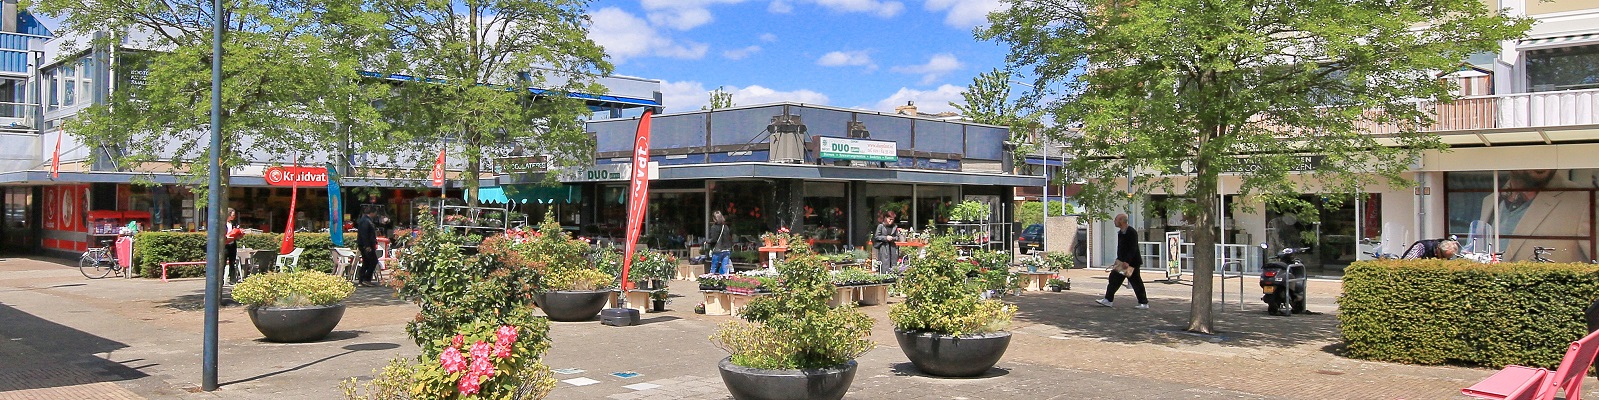 Foto van een plein met tegels, bomen, groen en daaromheen winkels. 